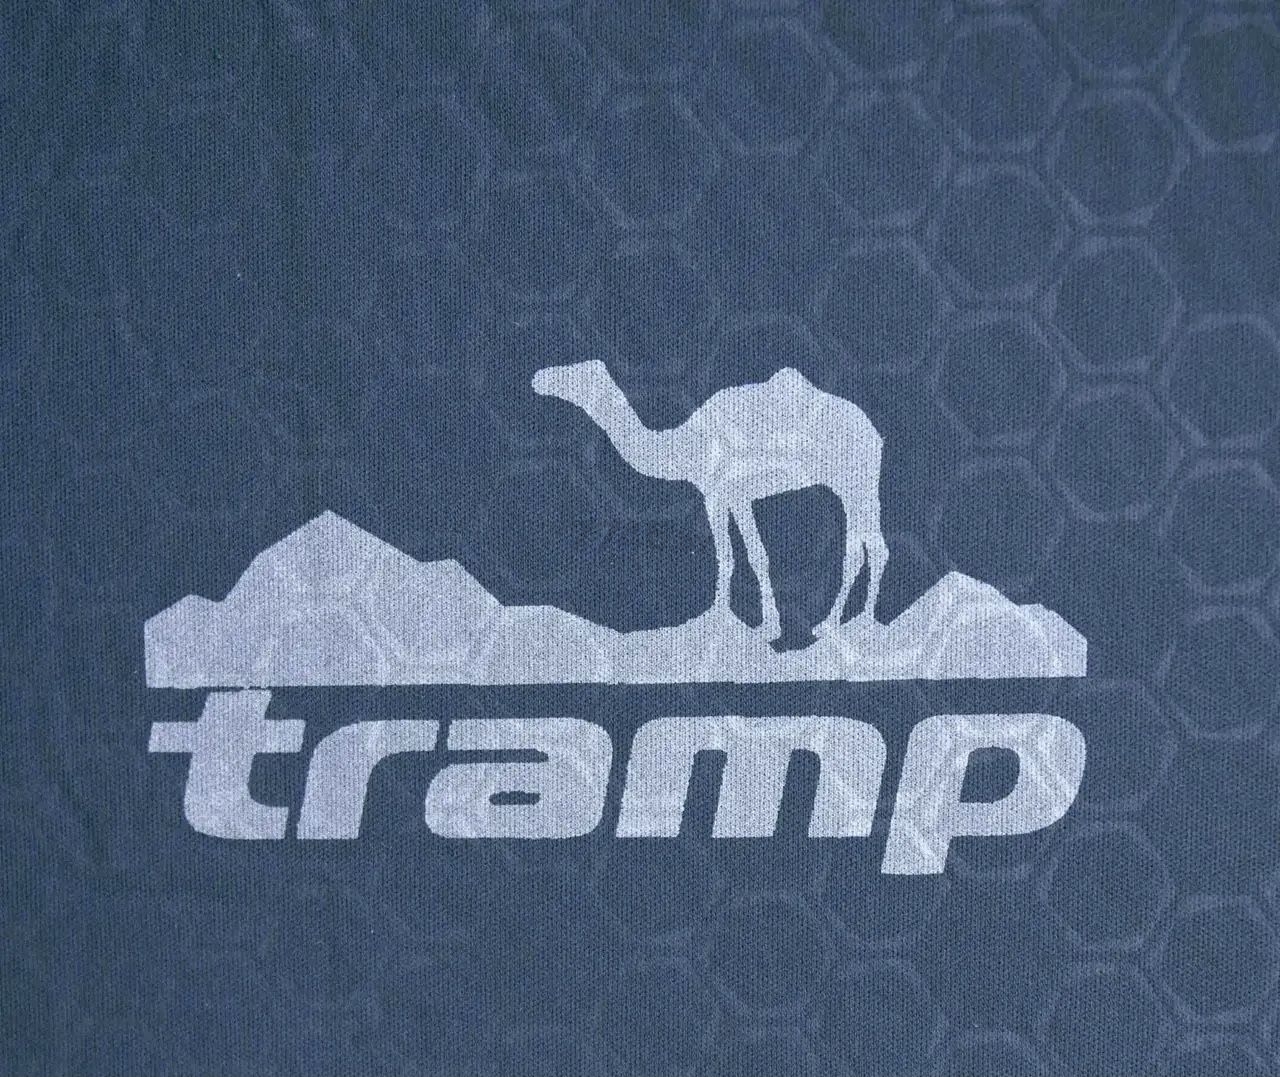 Коврик самонадувающийся TRAMP Dream Lux (TRI-026) - Фото 7